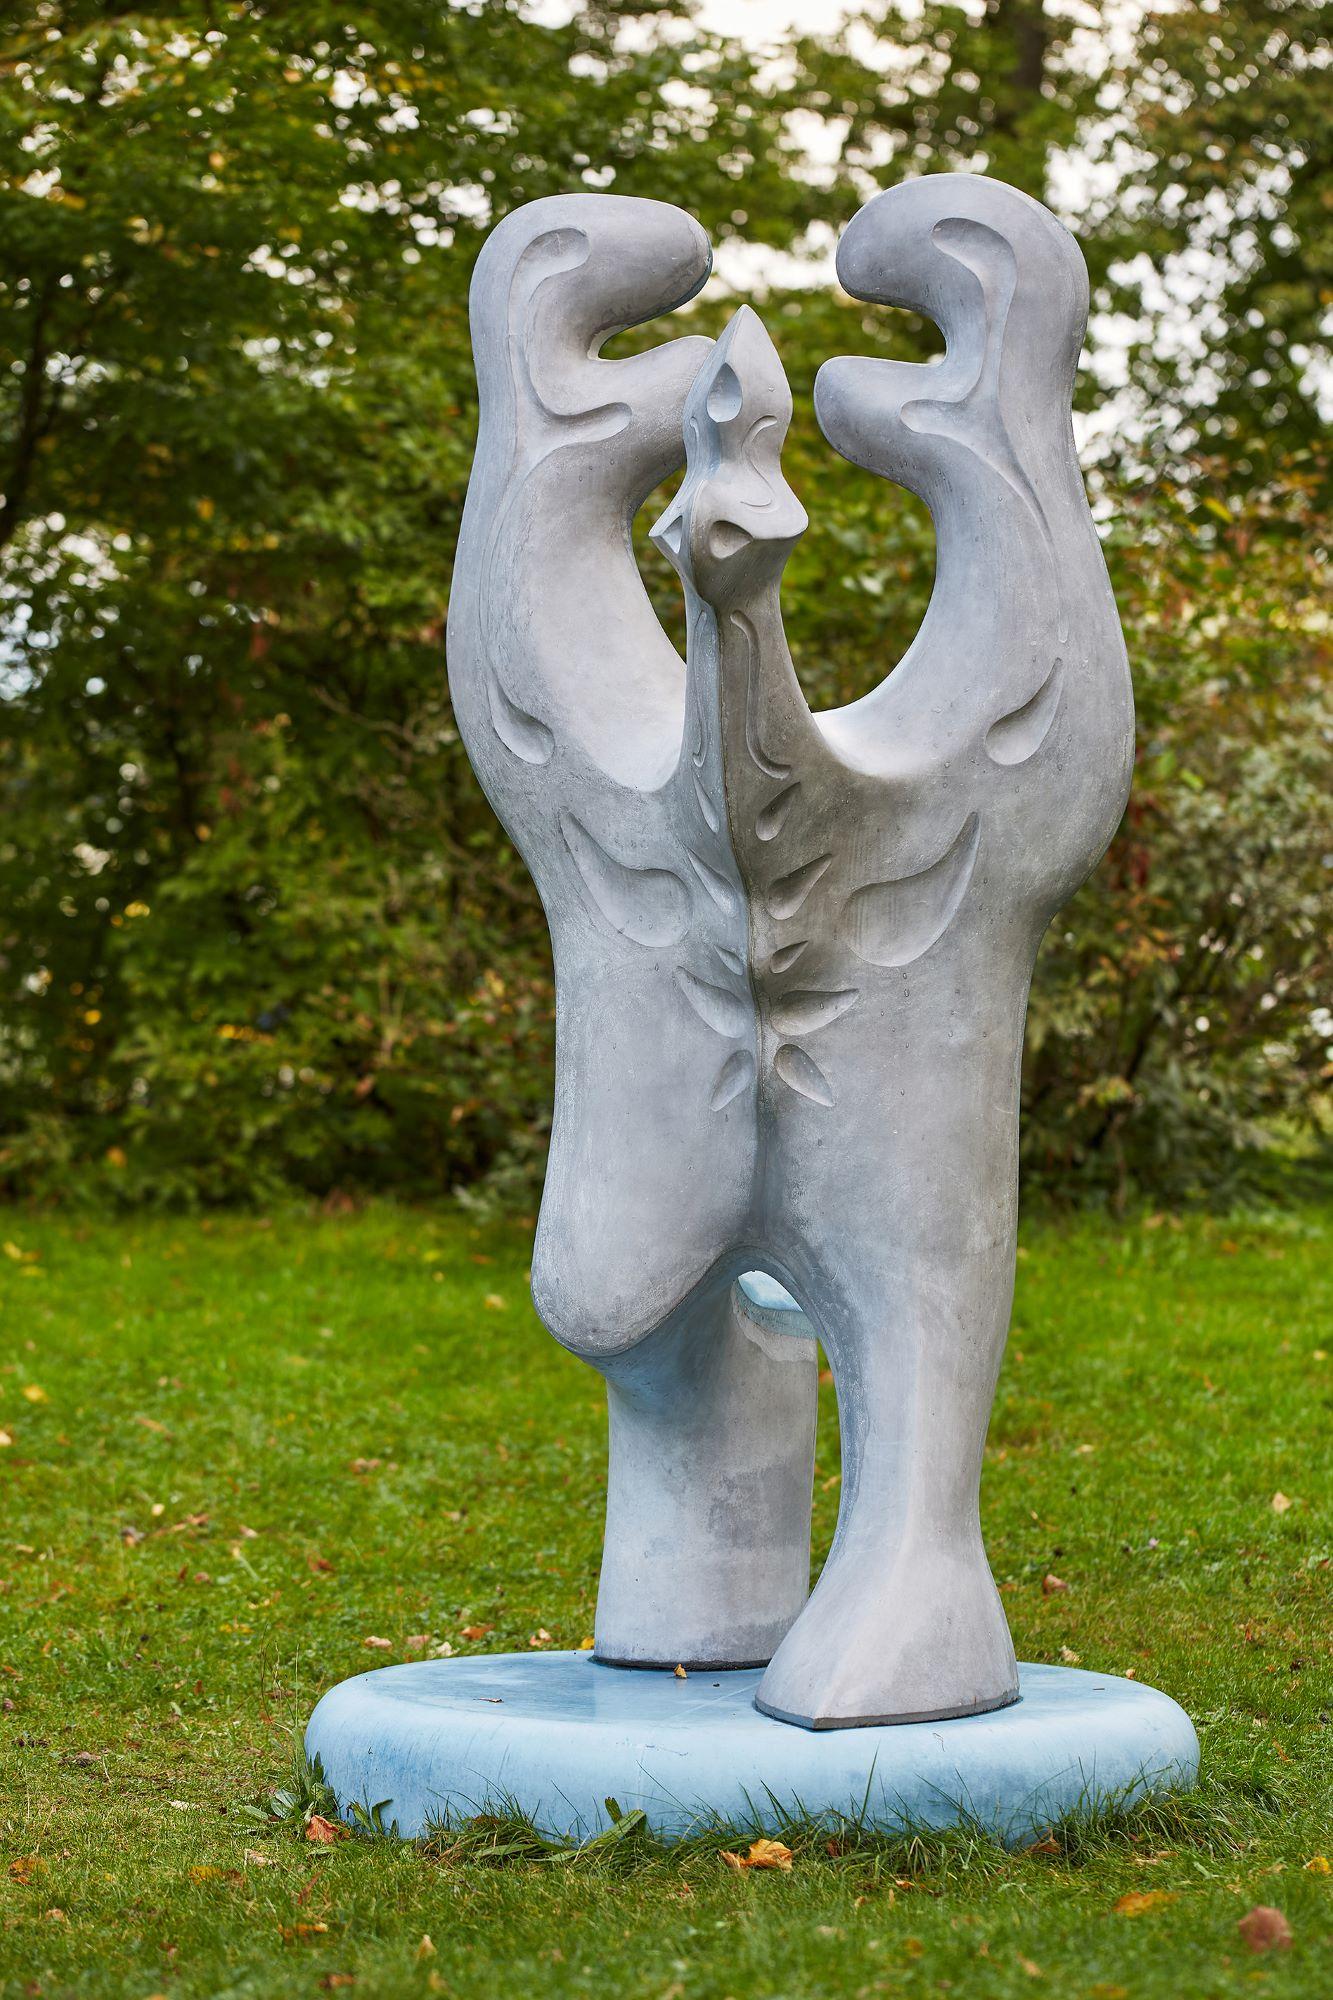 Big Creature by Pavlína Kvita - Contemporary sculpture, futuristic figure, grey For Sale 6